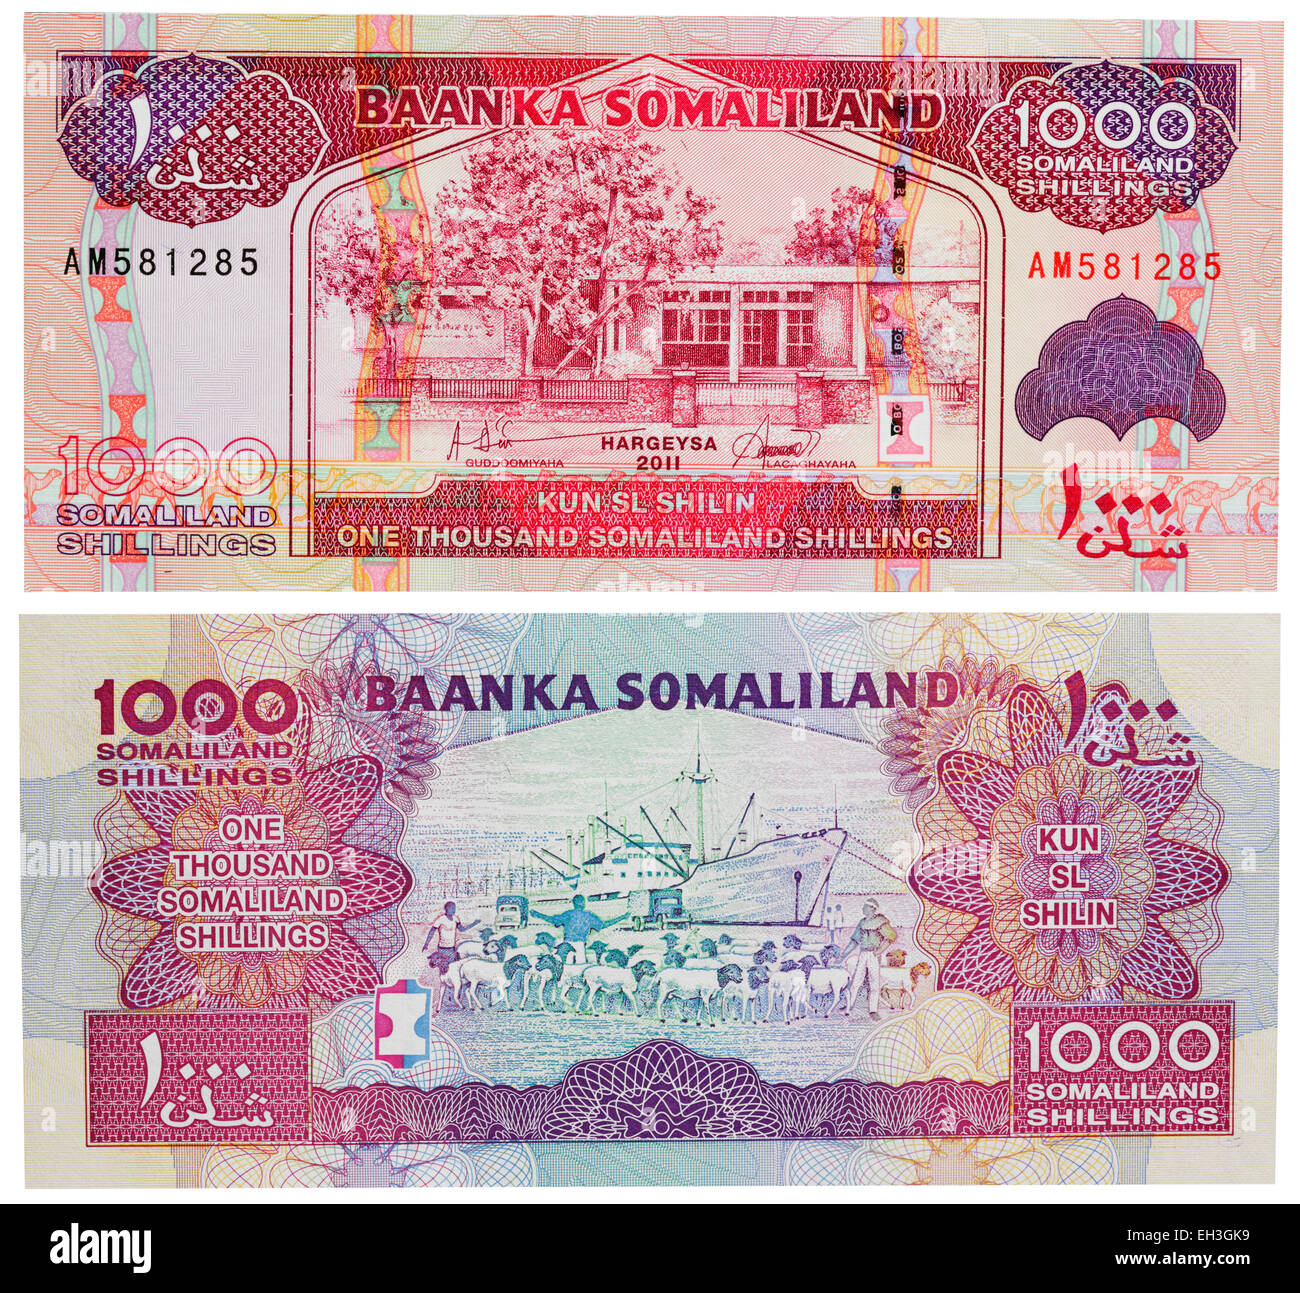 1000 shillings banknote, Somaliland, 2011 Stock Photo